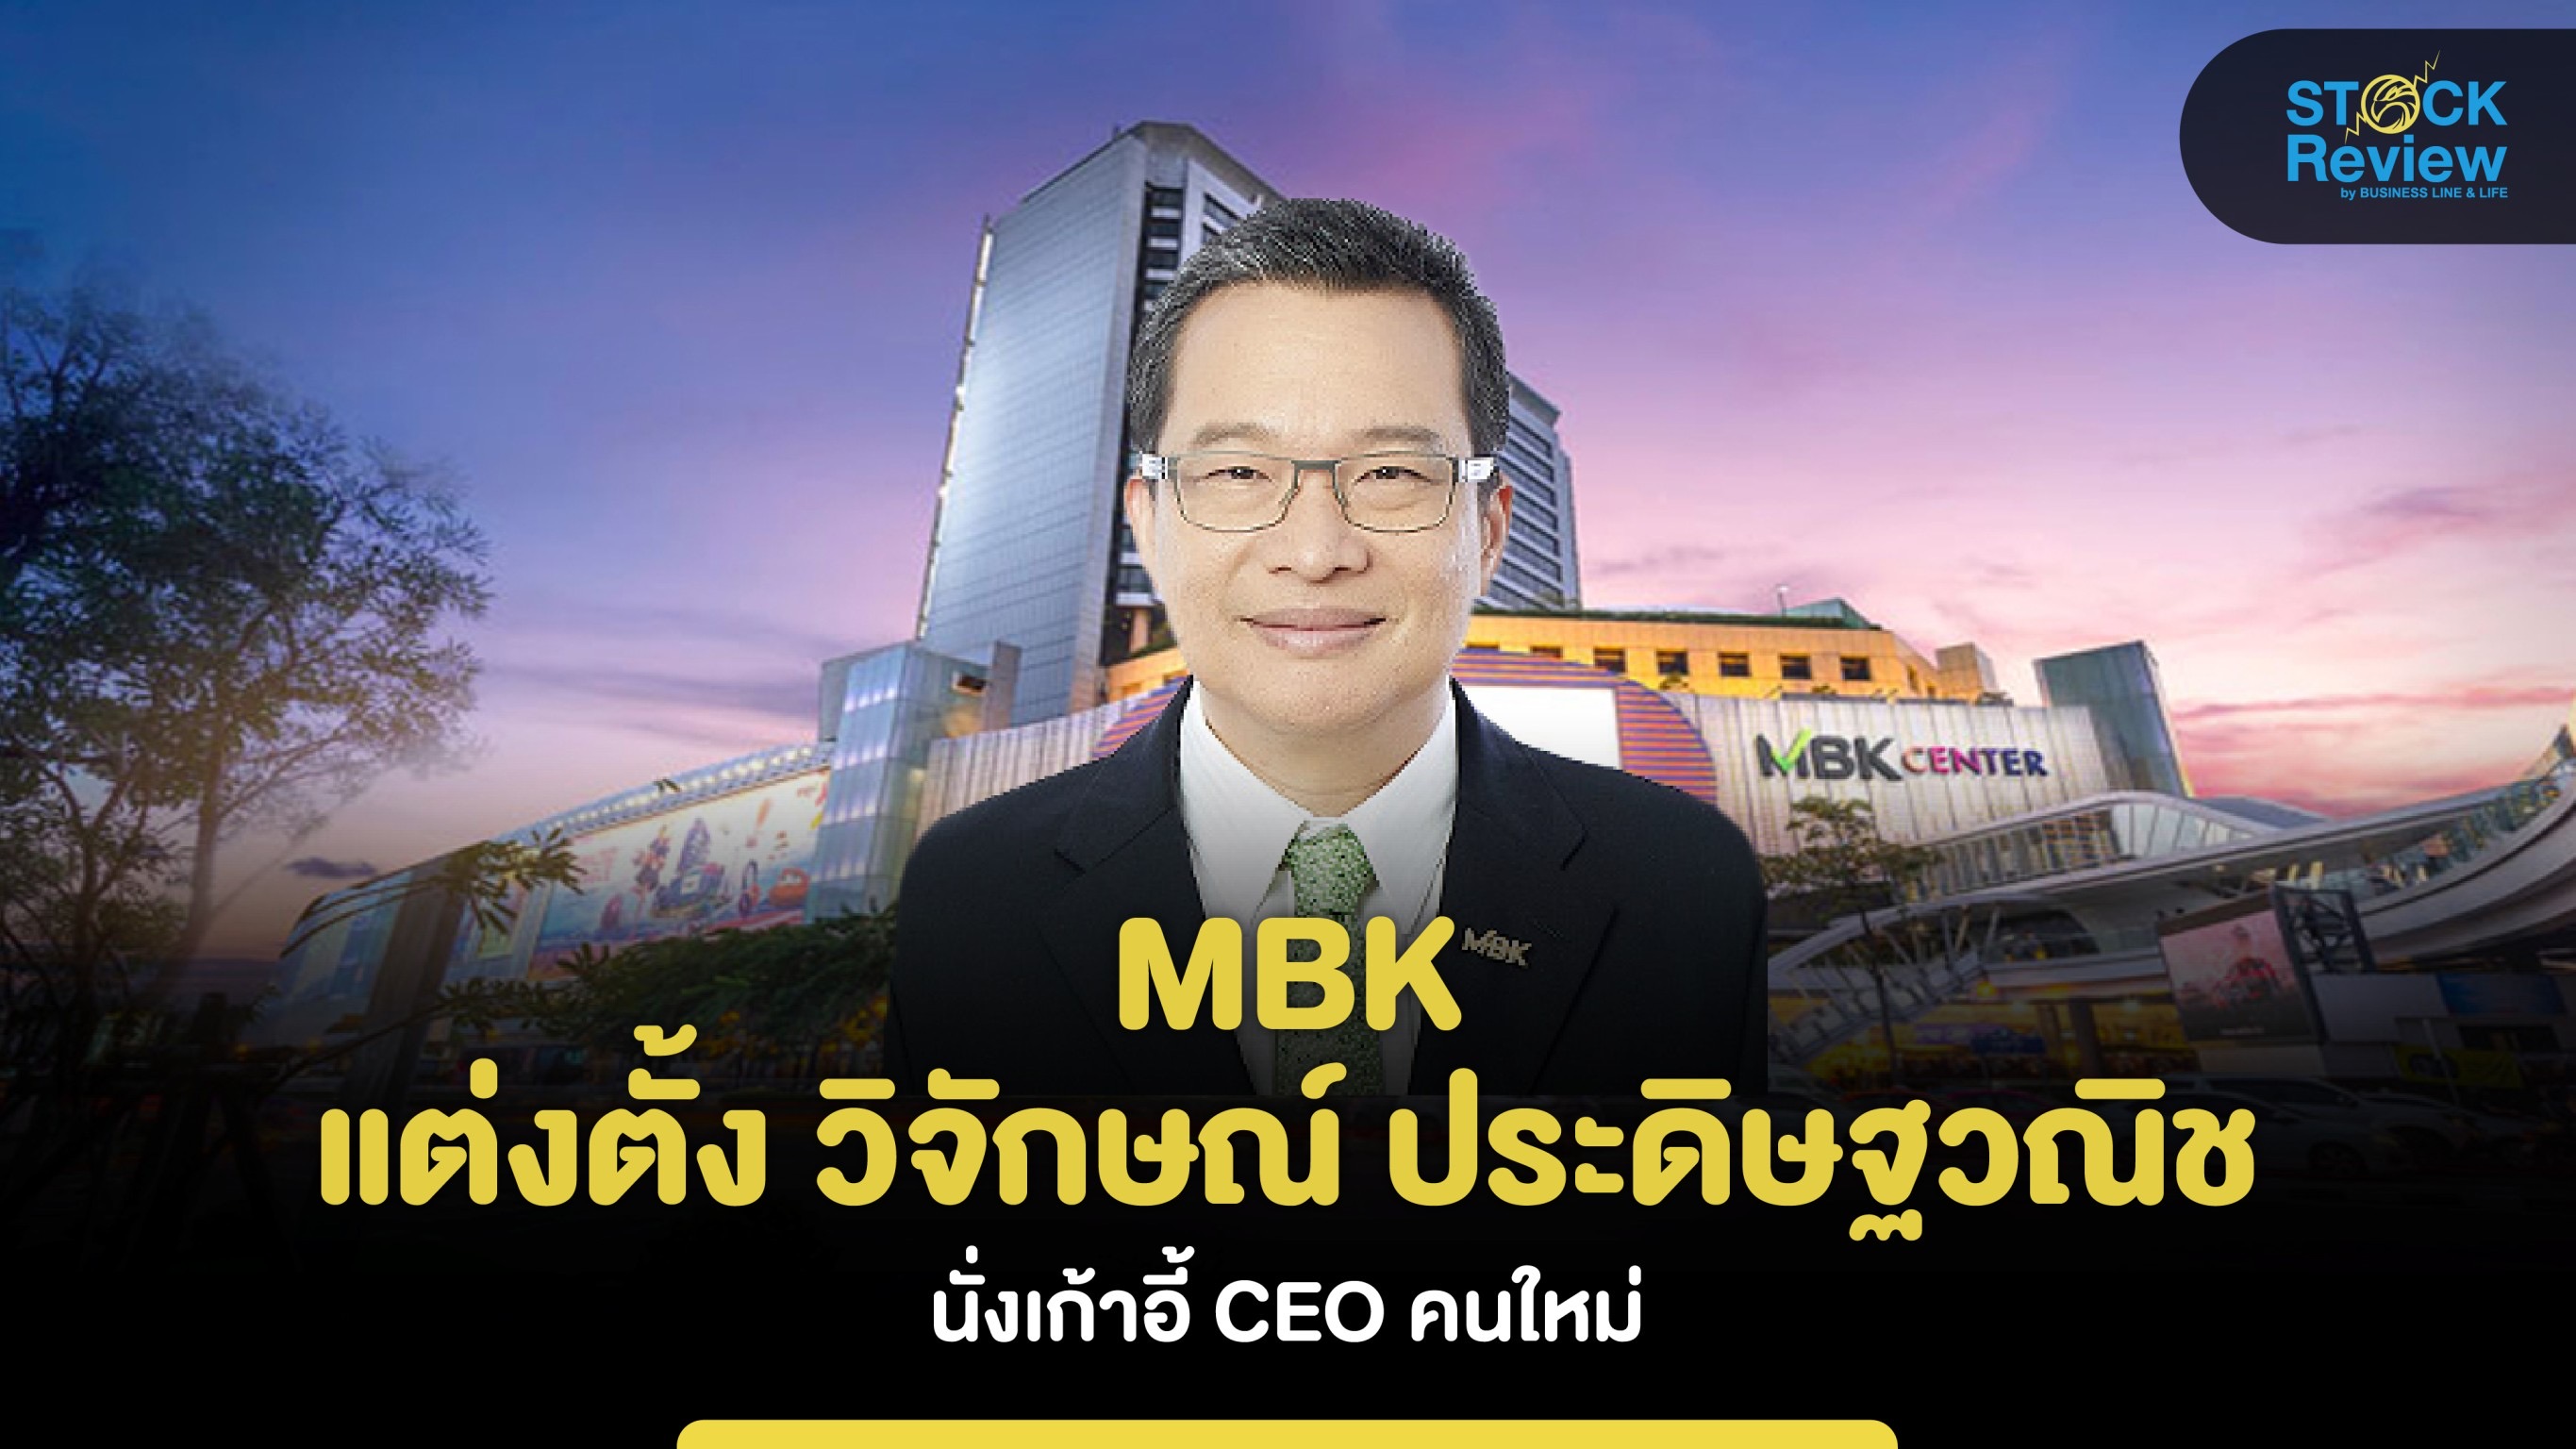 MBK แต่งตั้ง “วิจักษณ์ ประดิษฐวณิช” นั่งเก้าอี้ CEO คนใหม่